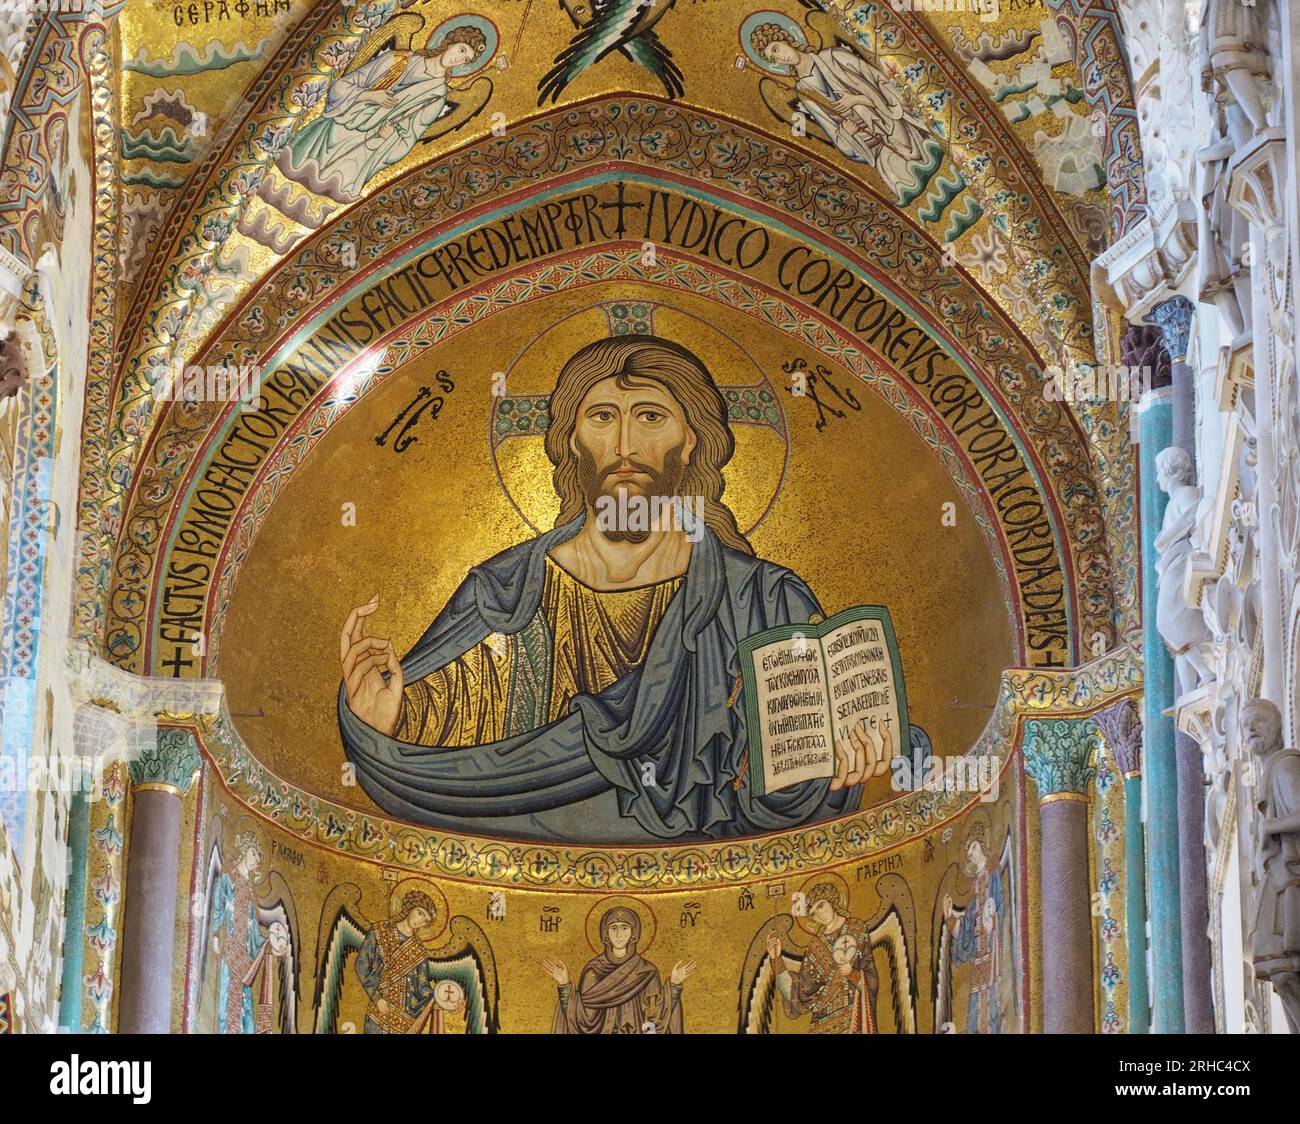 Il mosaico nell'abside della cattedrale di Cefalù ritrae il Cristo Pantocratore. La figura porta il Vangelo di Giovanni nella mano sinistra. Foto Stock